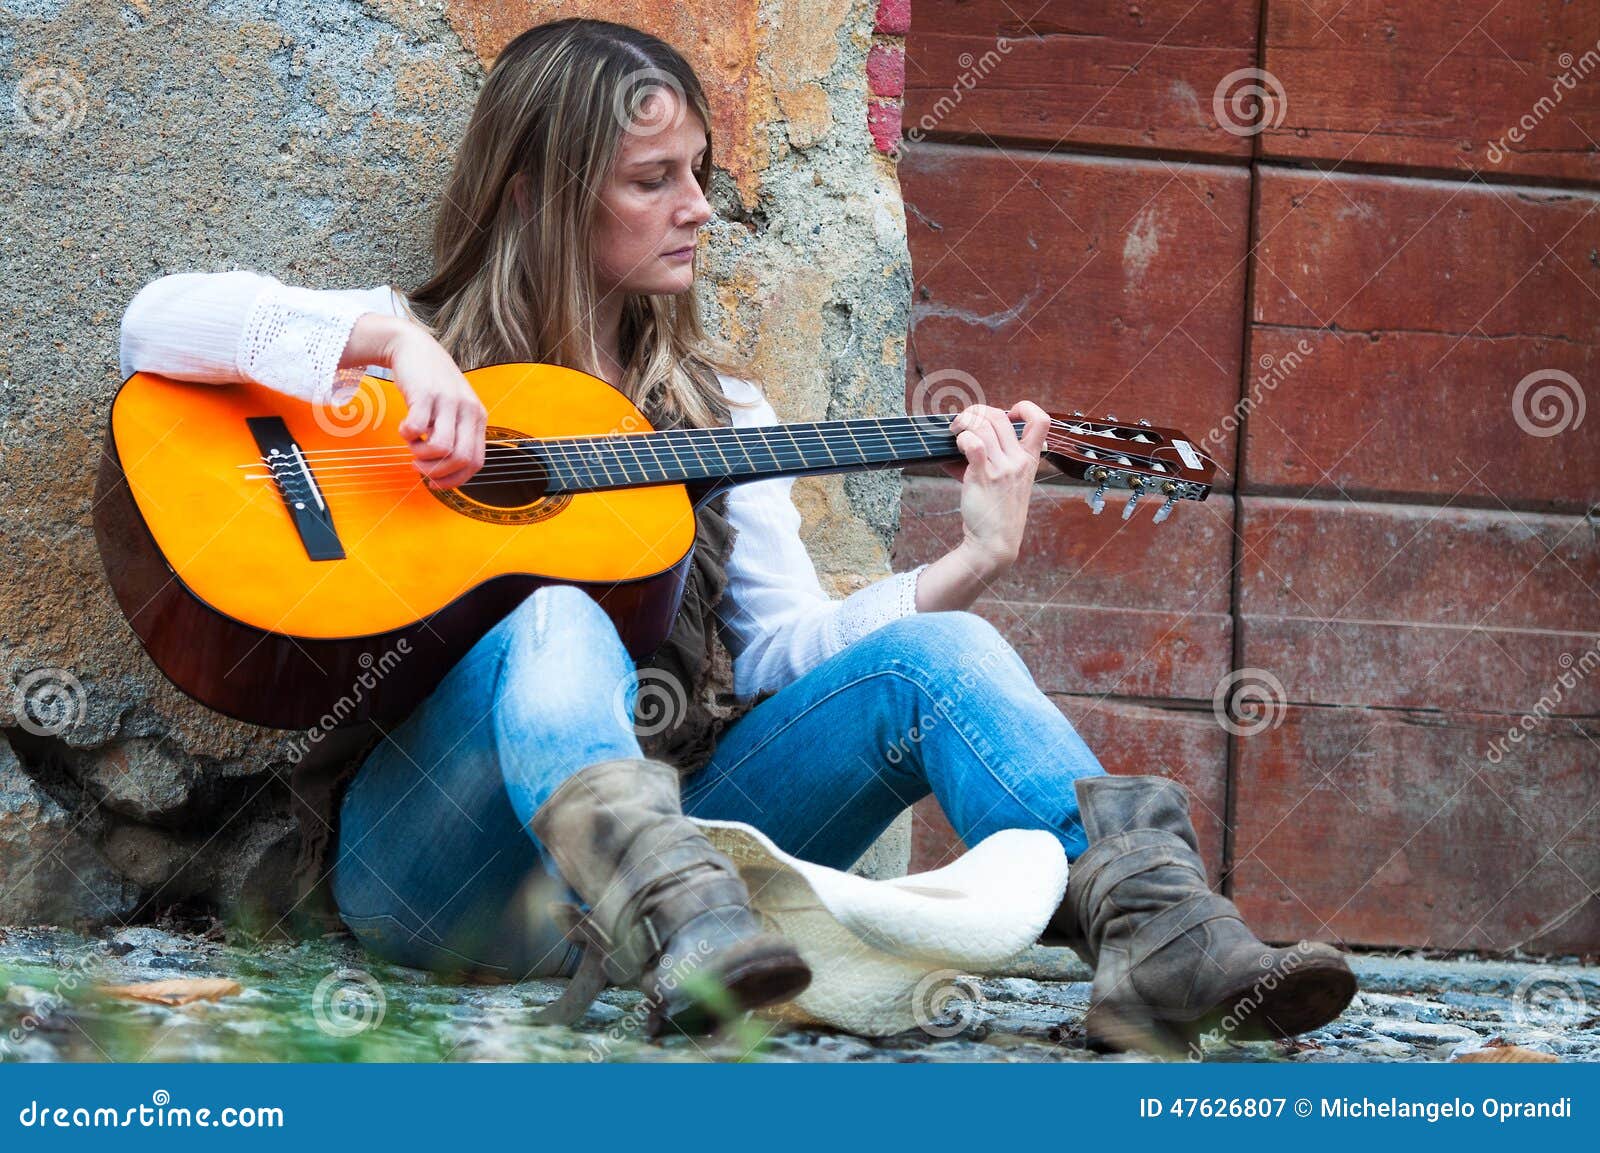 street musician girl